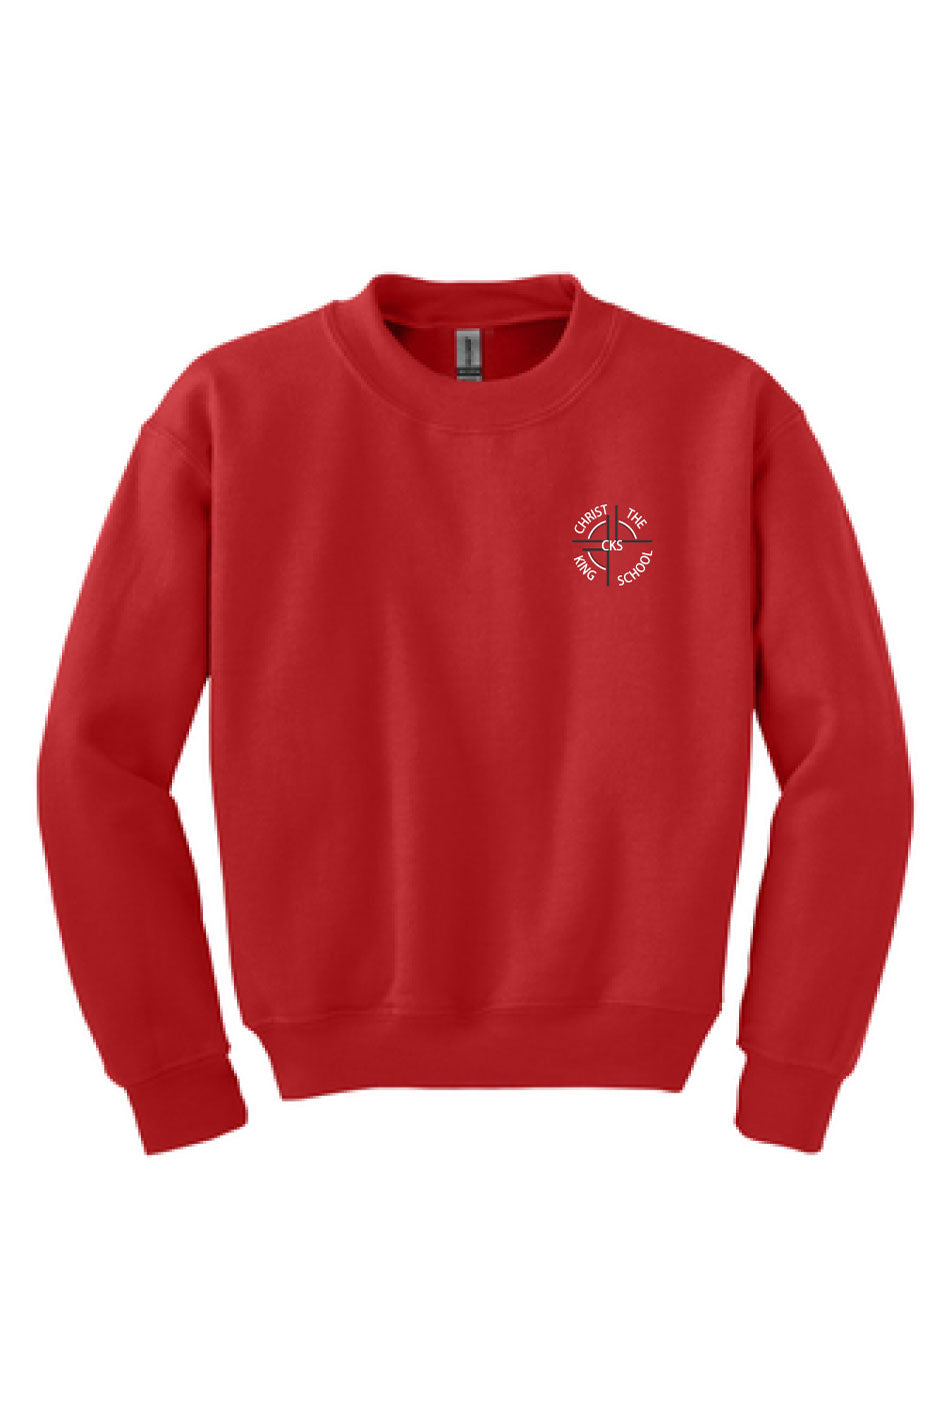 Pre-Order ADULT CKS Crewneck Sweatshirt - Red